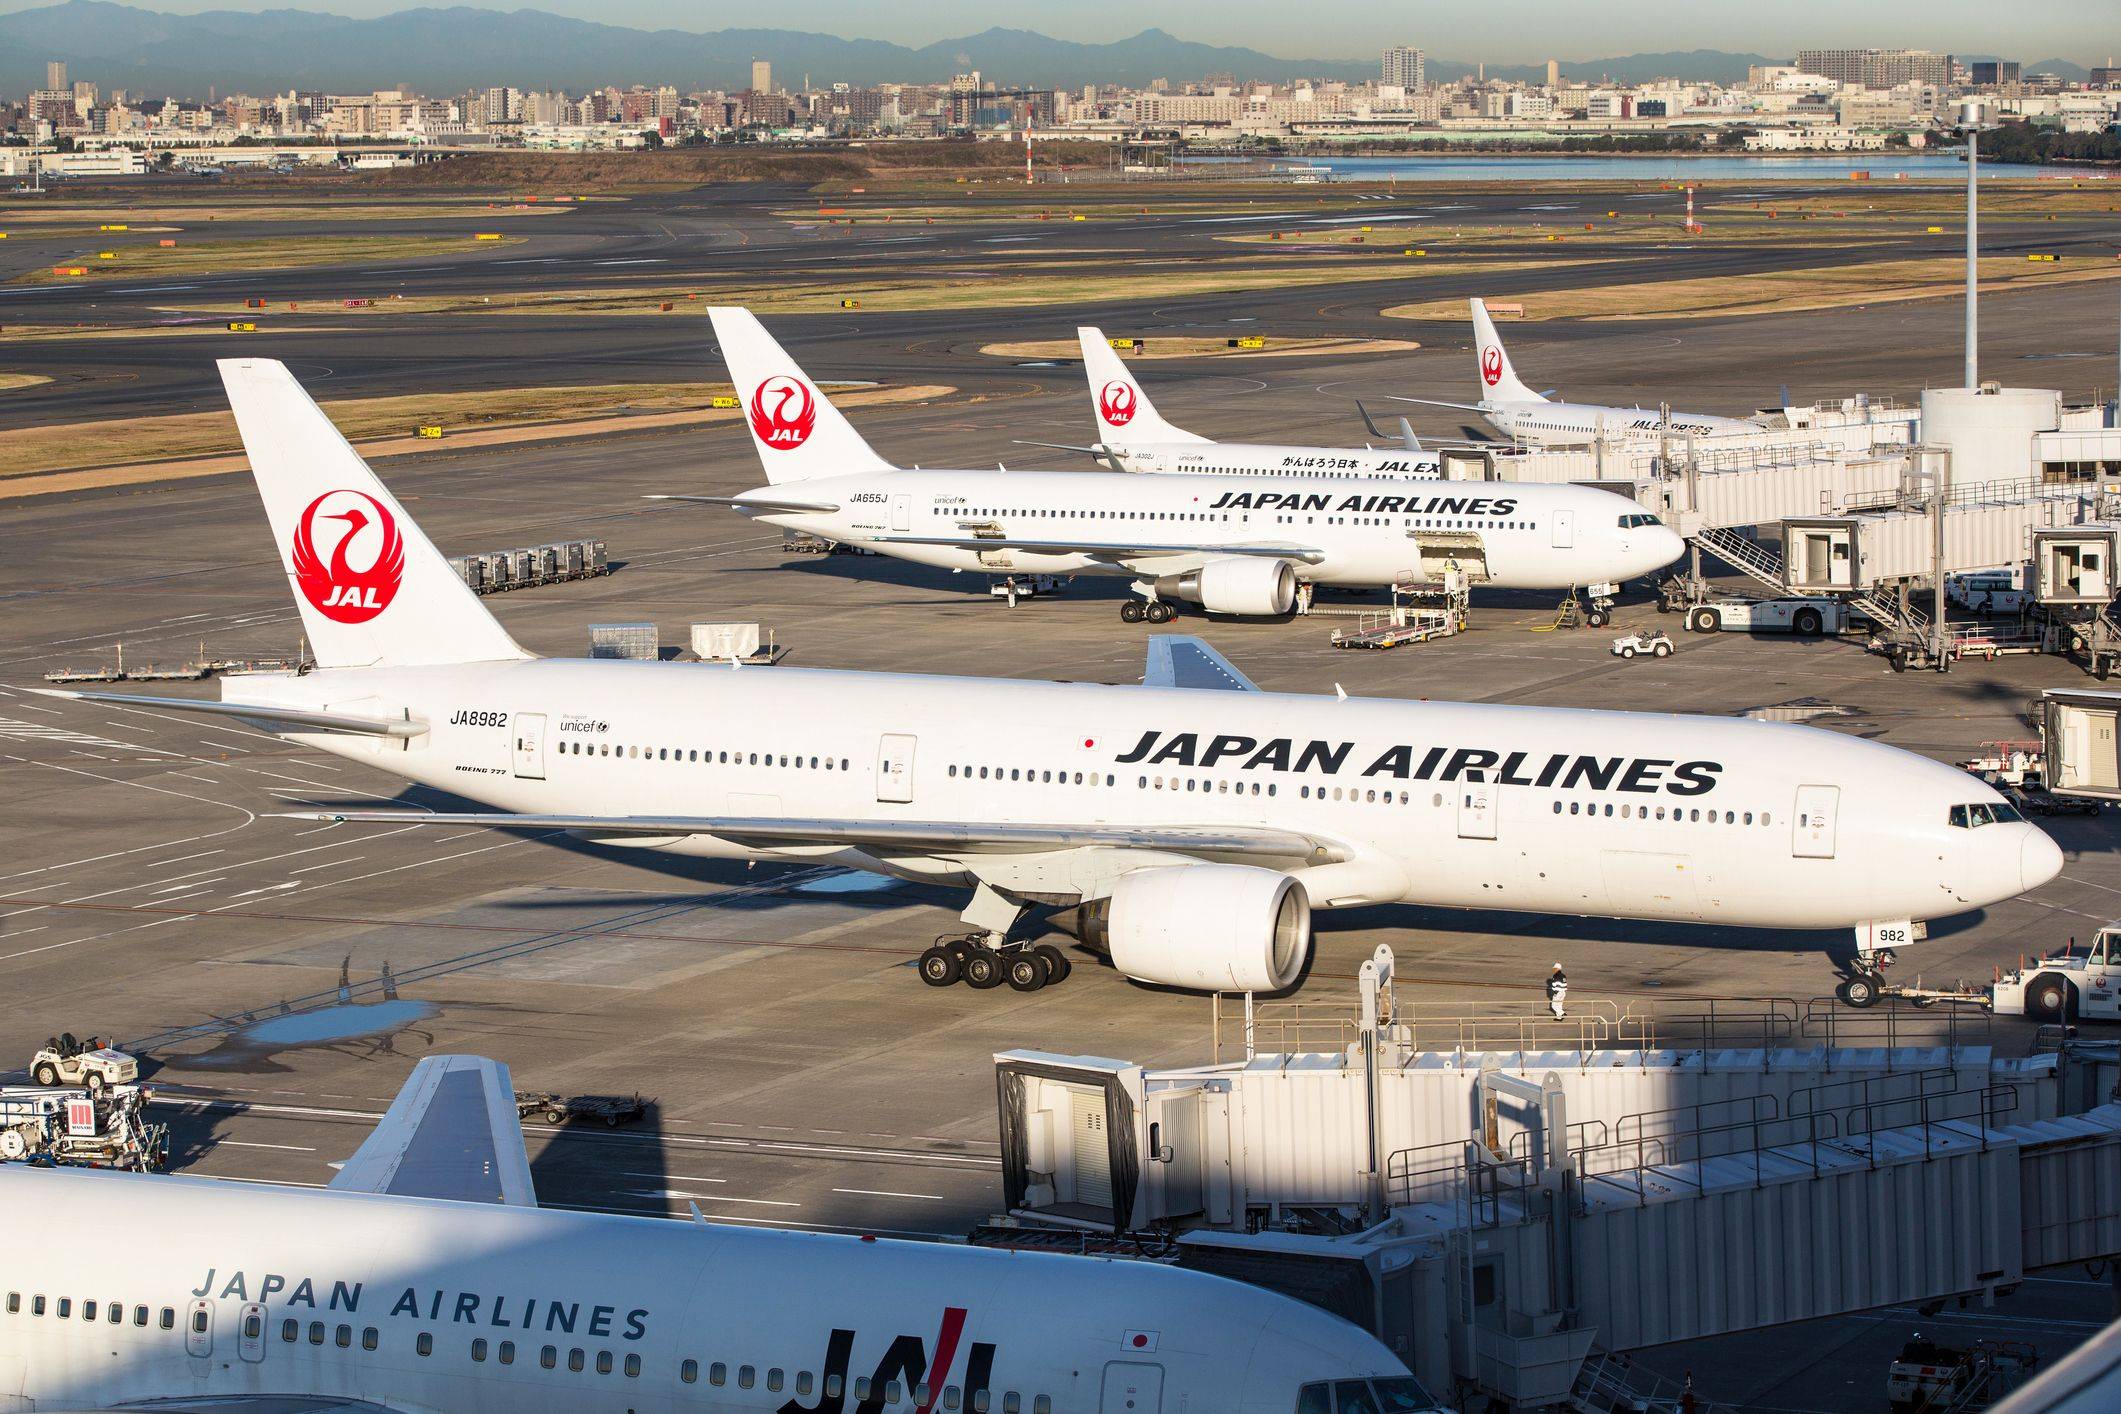 Японские авиалинии: официальный сайт, описание